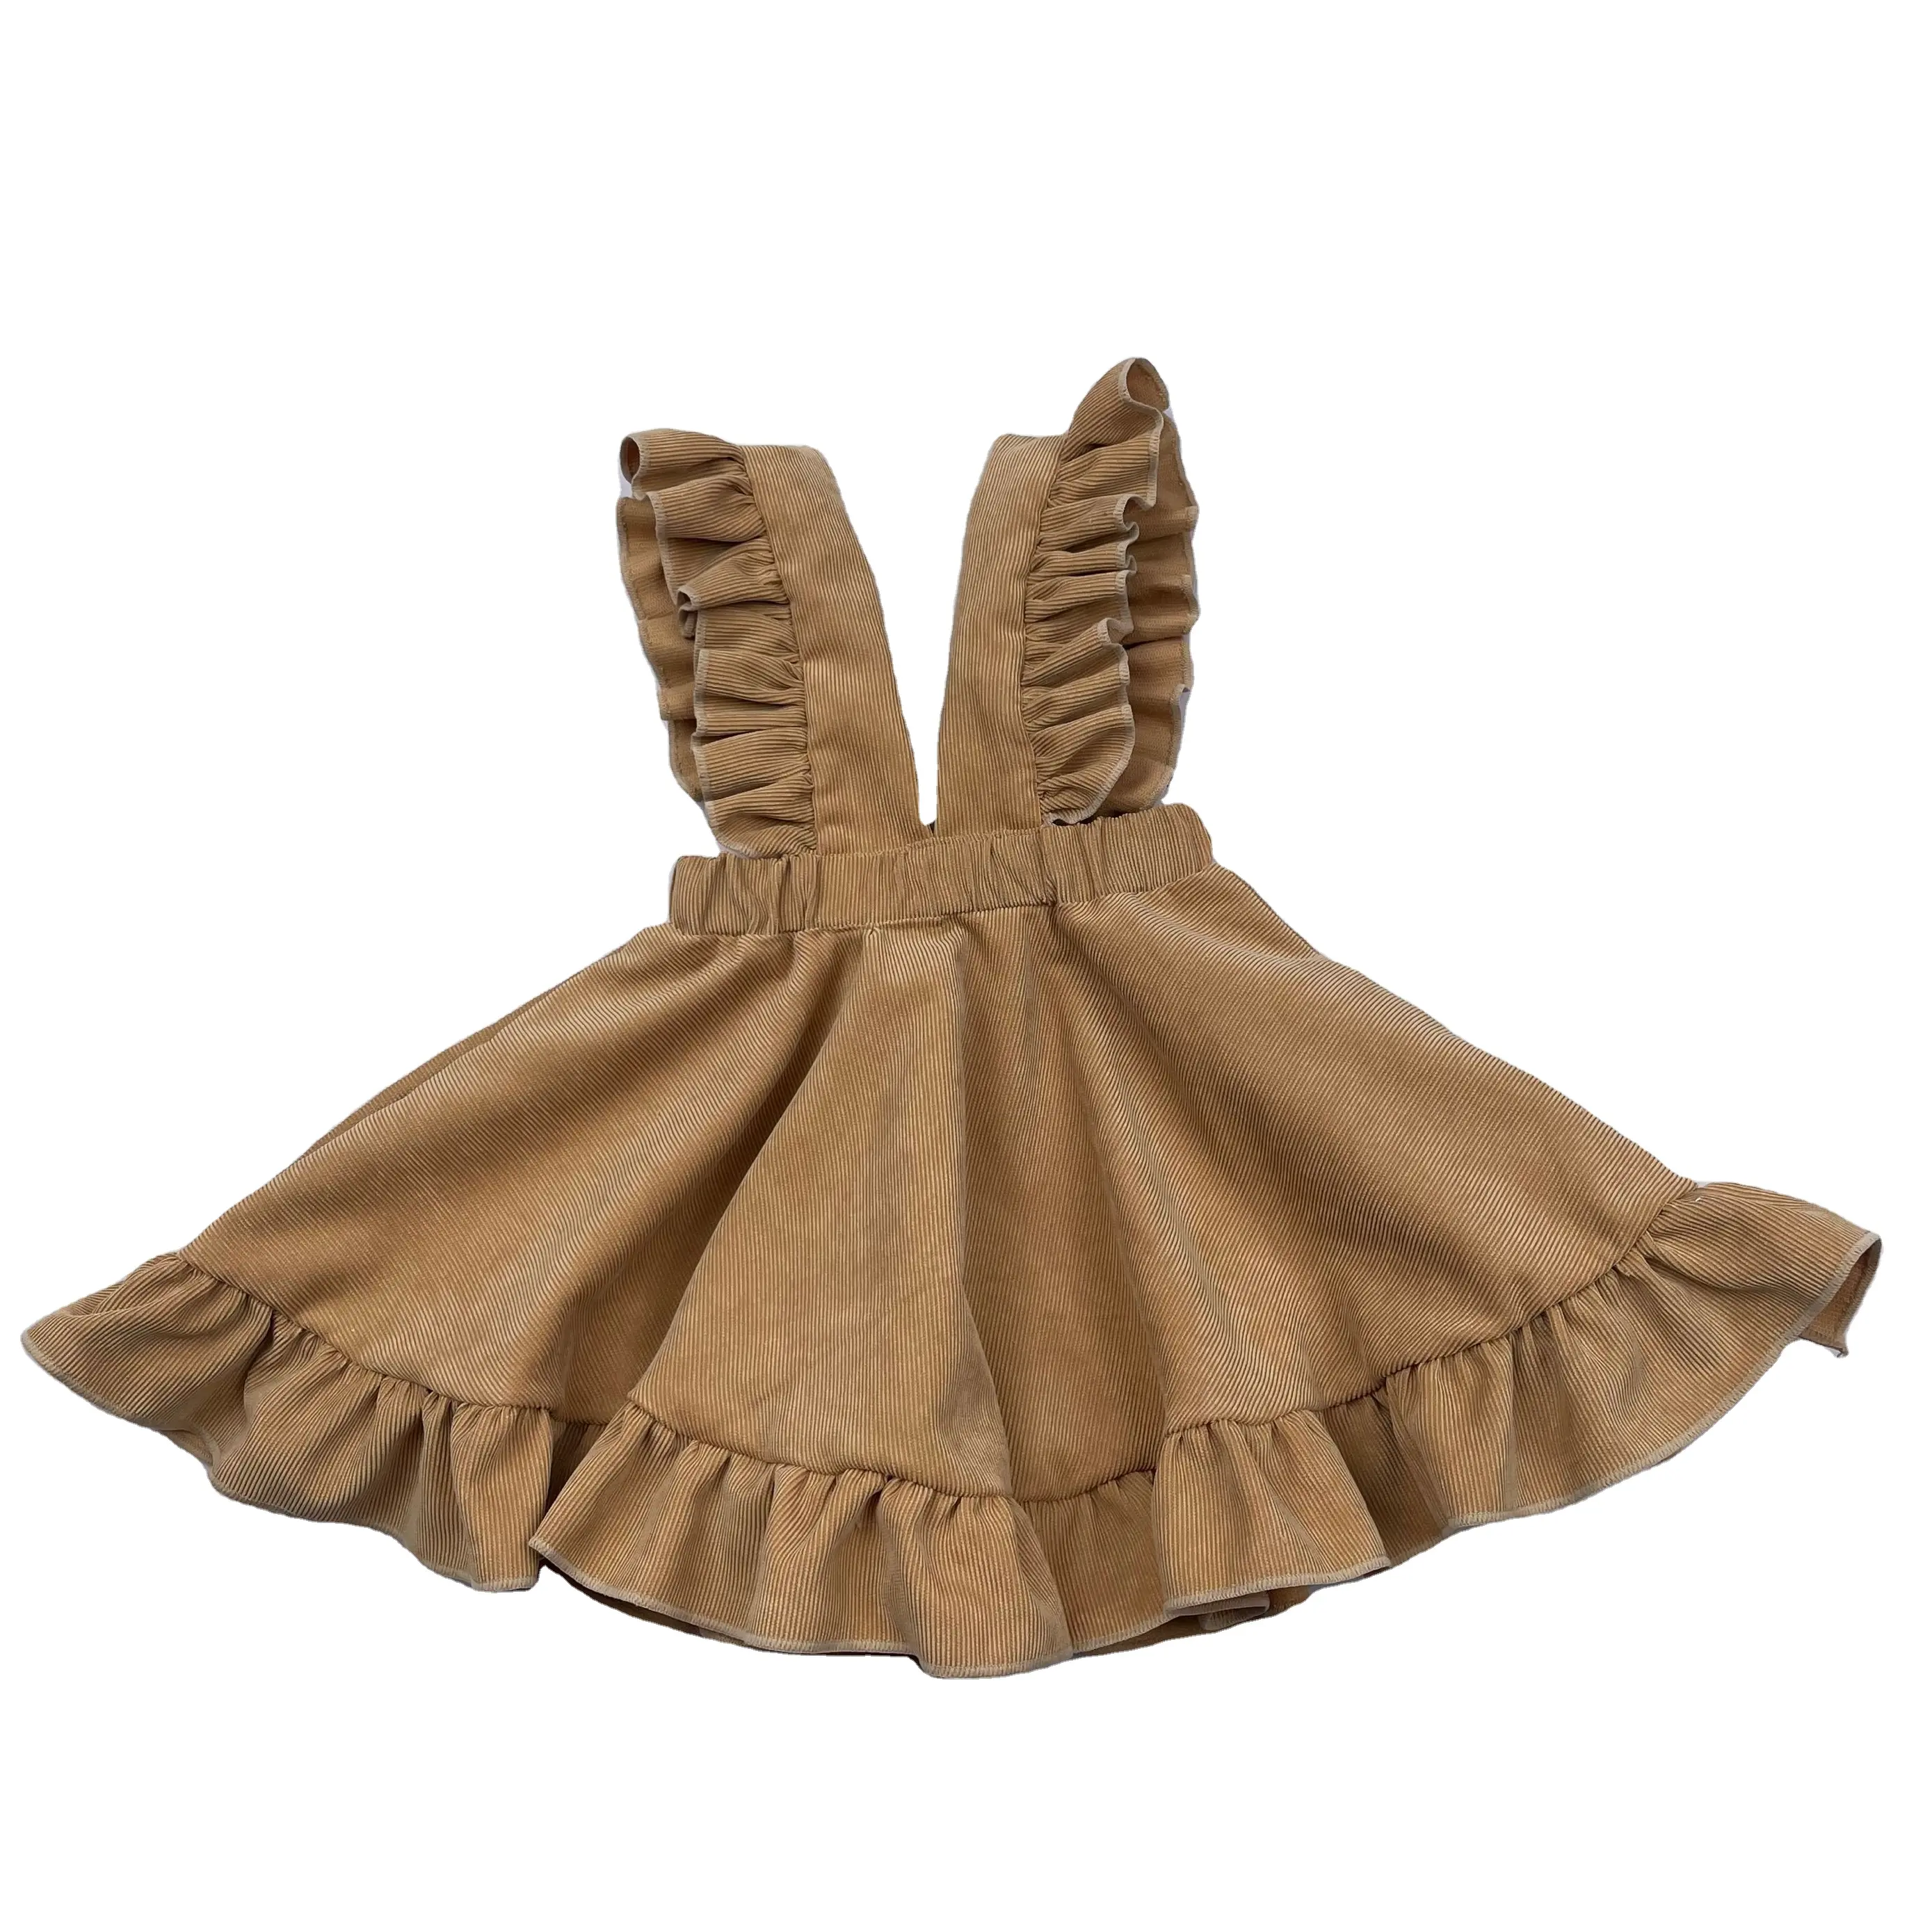 Ruffled Corduroy Skirts Kids Girls Back To School Suspender Skirt 4 To 5 Year Baby Girl Dress